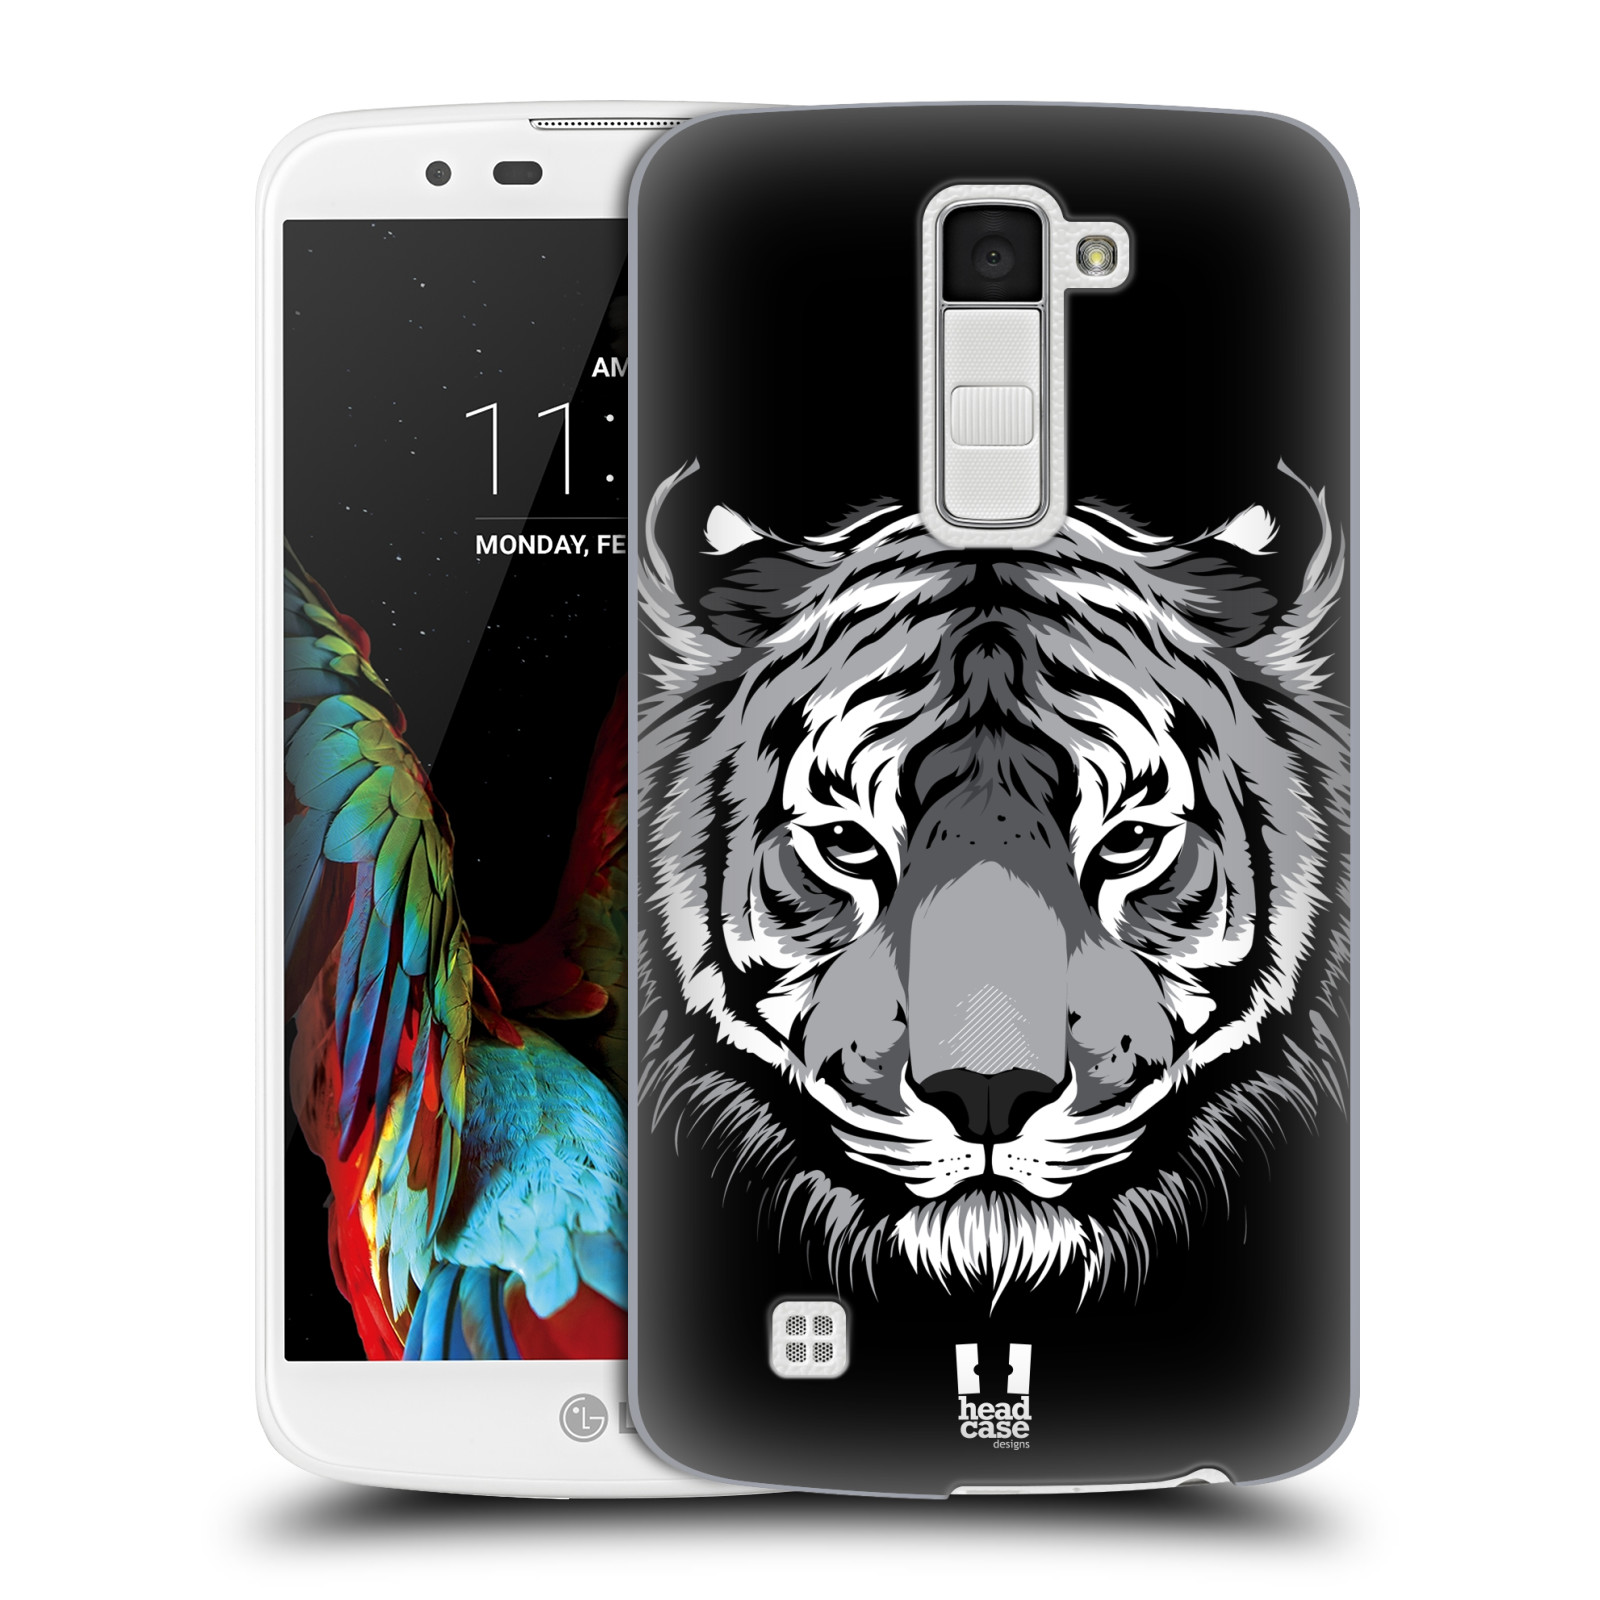 HEAD CASE plastový obal na mobil LG K10 vzor Zvíře kreslená tvář 2 tygr